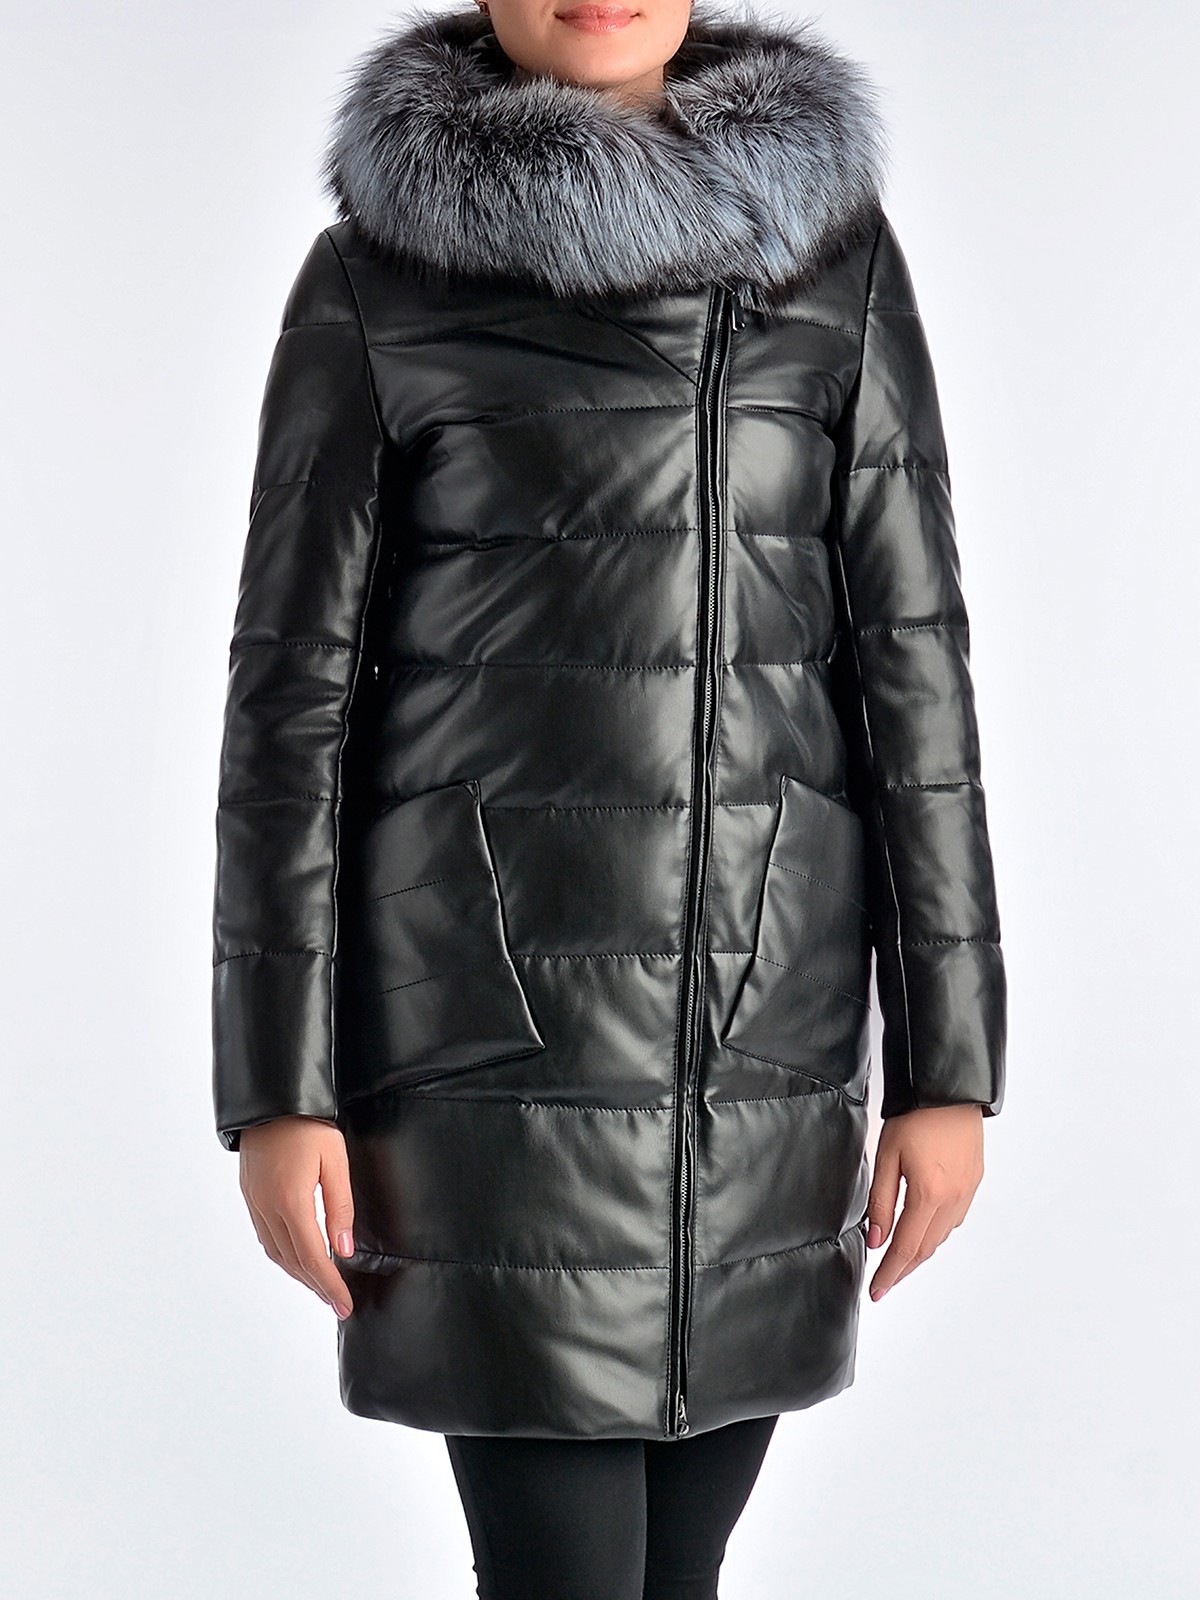 Куртка Zara женская из экокожи экокожи с капюшоном 8073/239